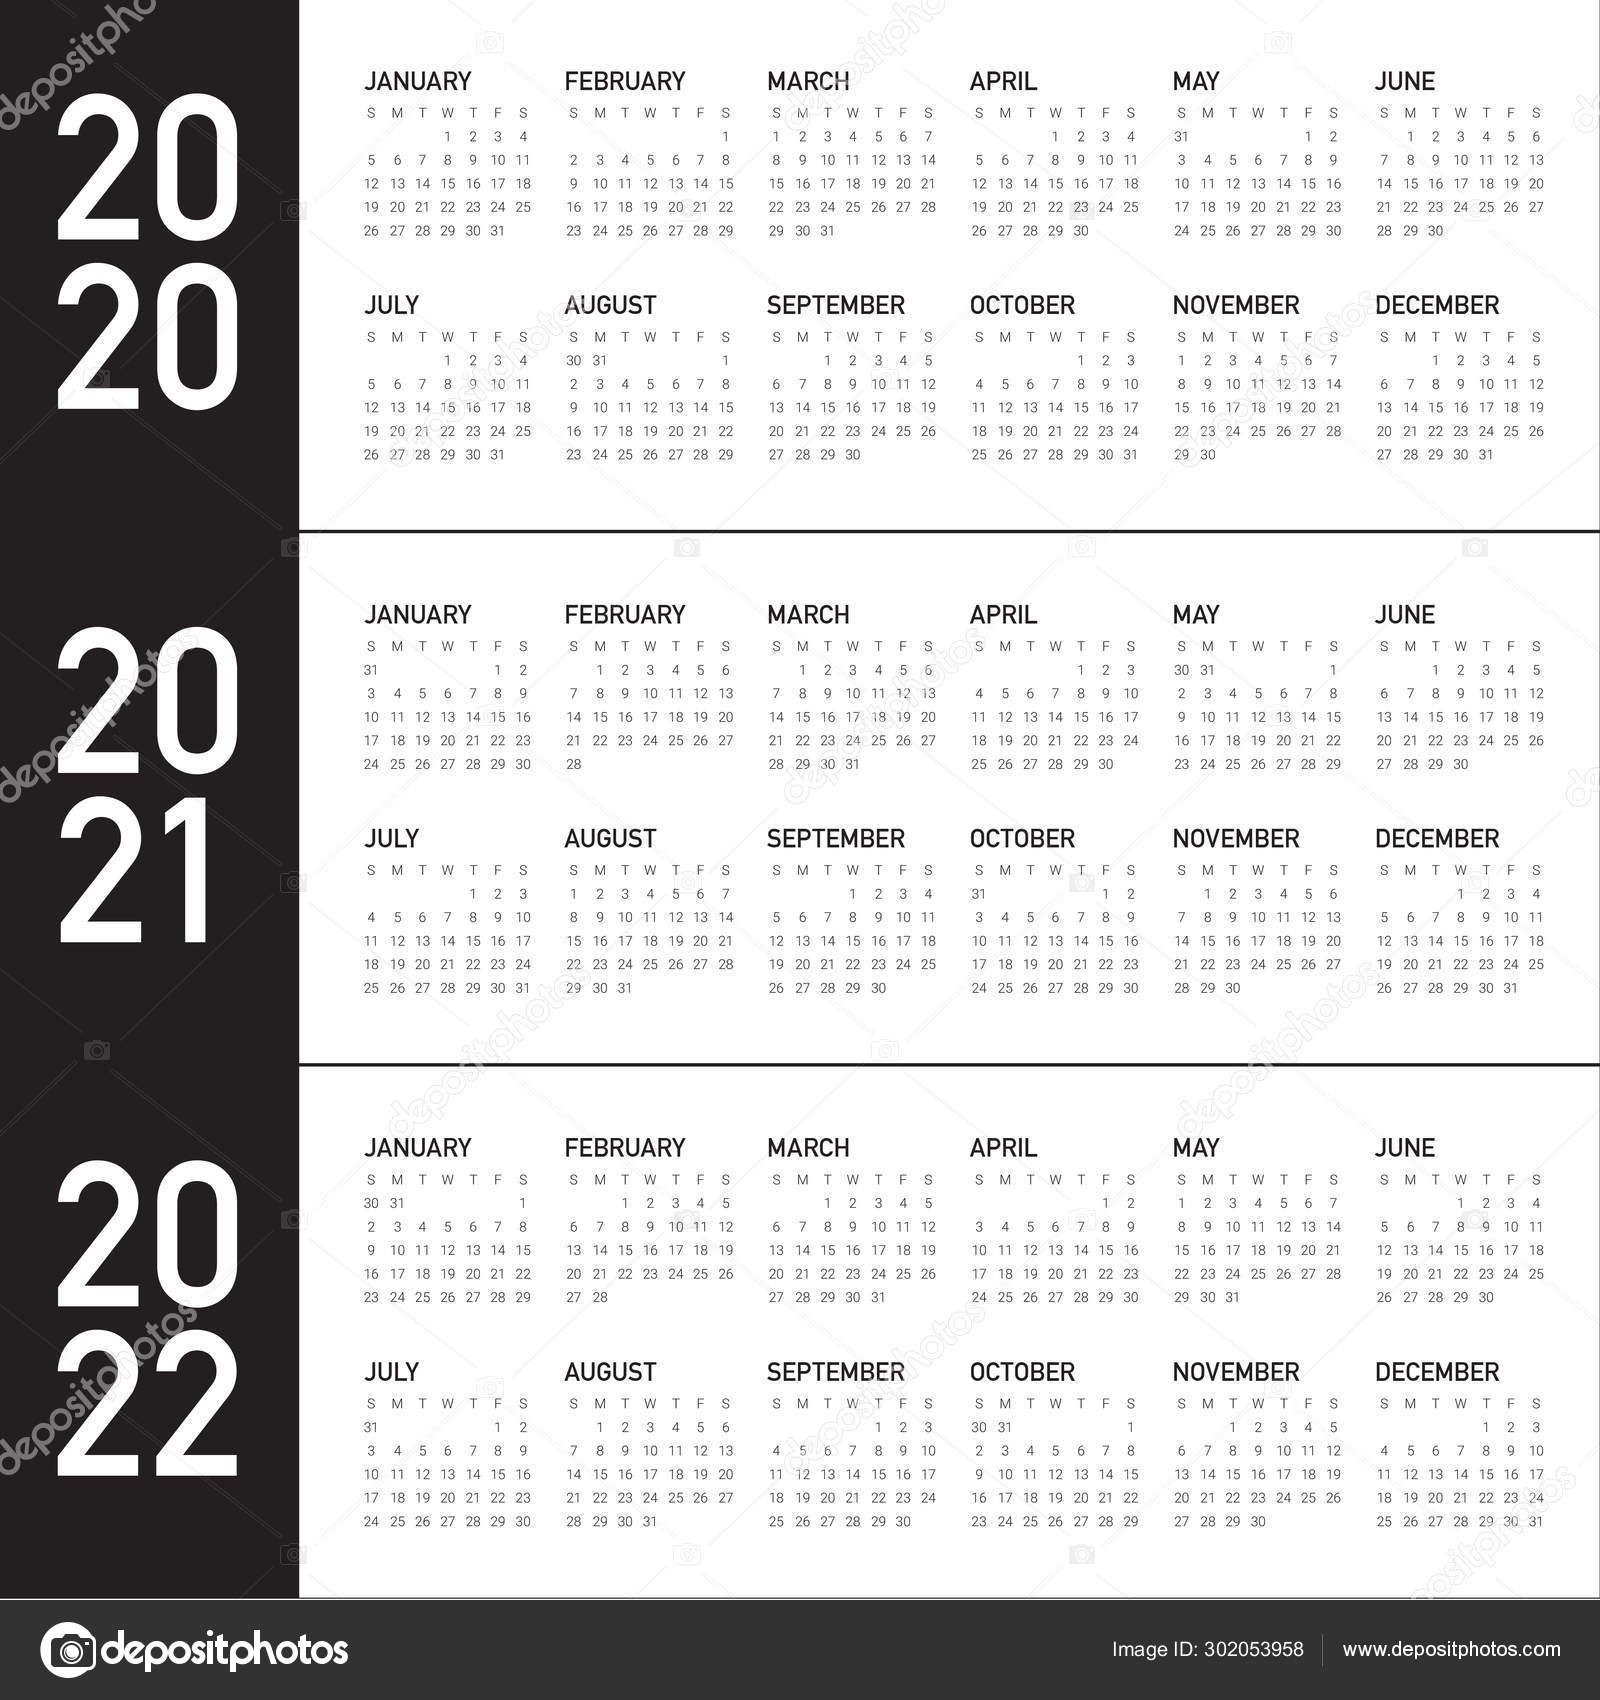 Depo Calendar 2021  Template Calendar Design inside Depo Shot Calendar 2021